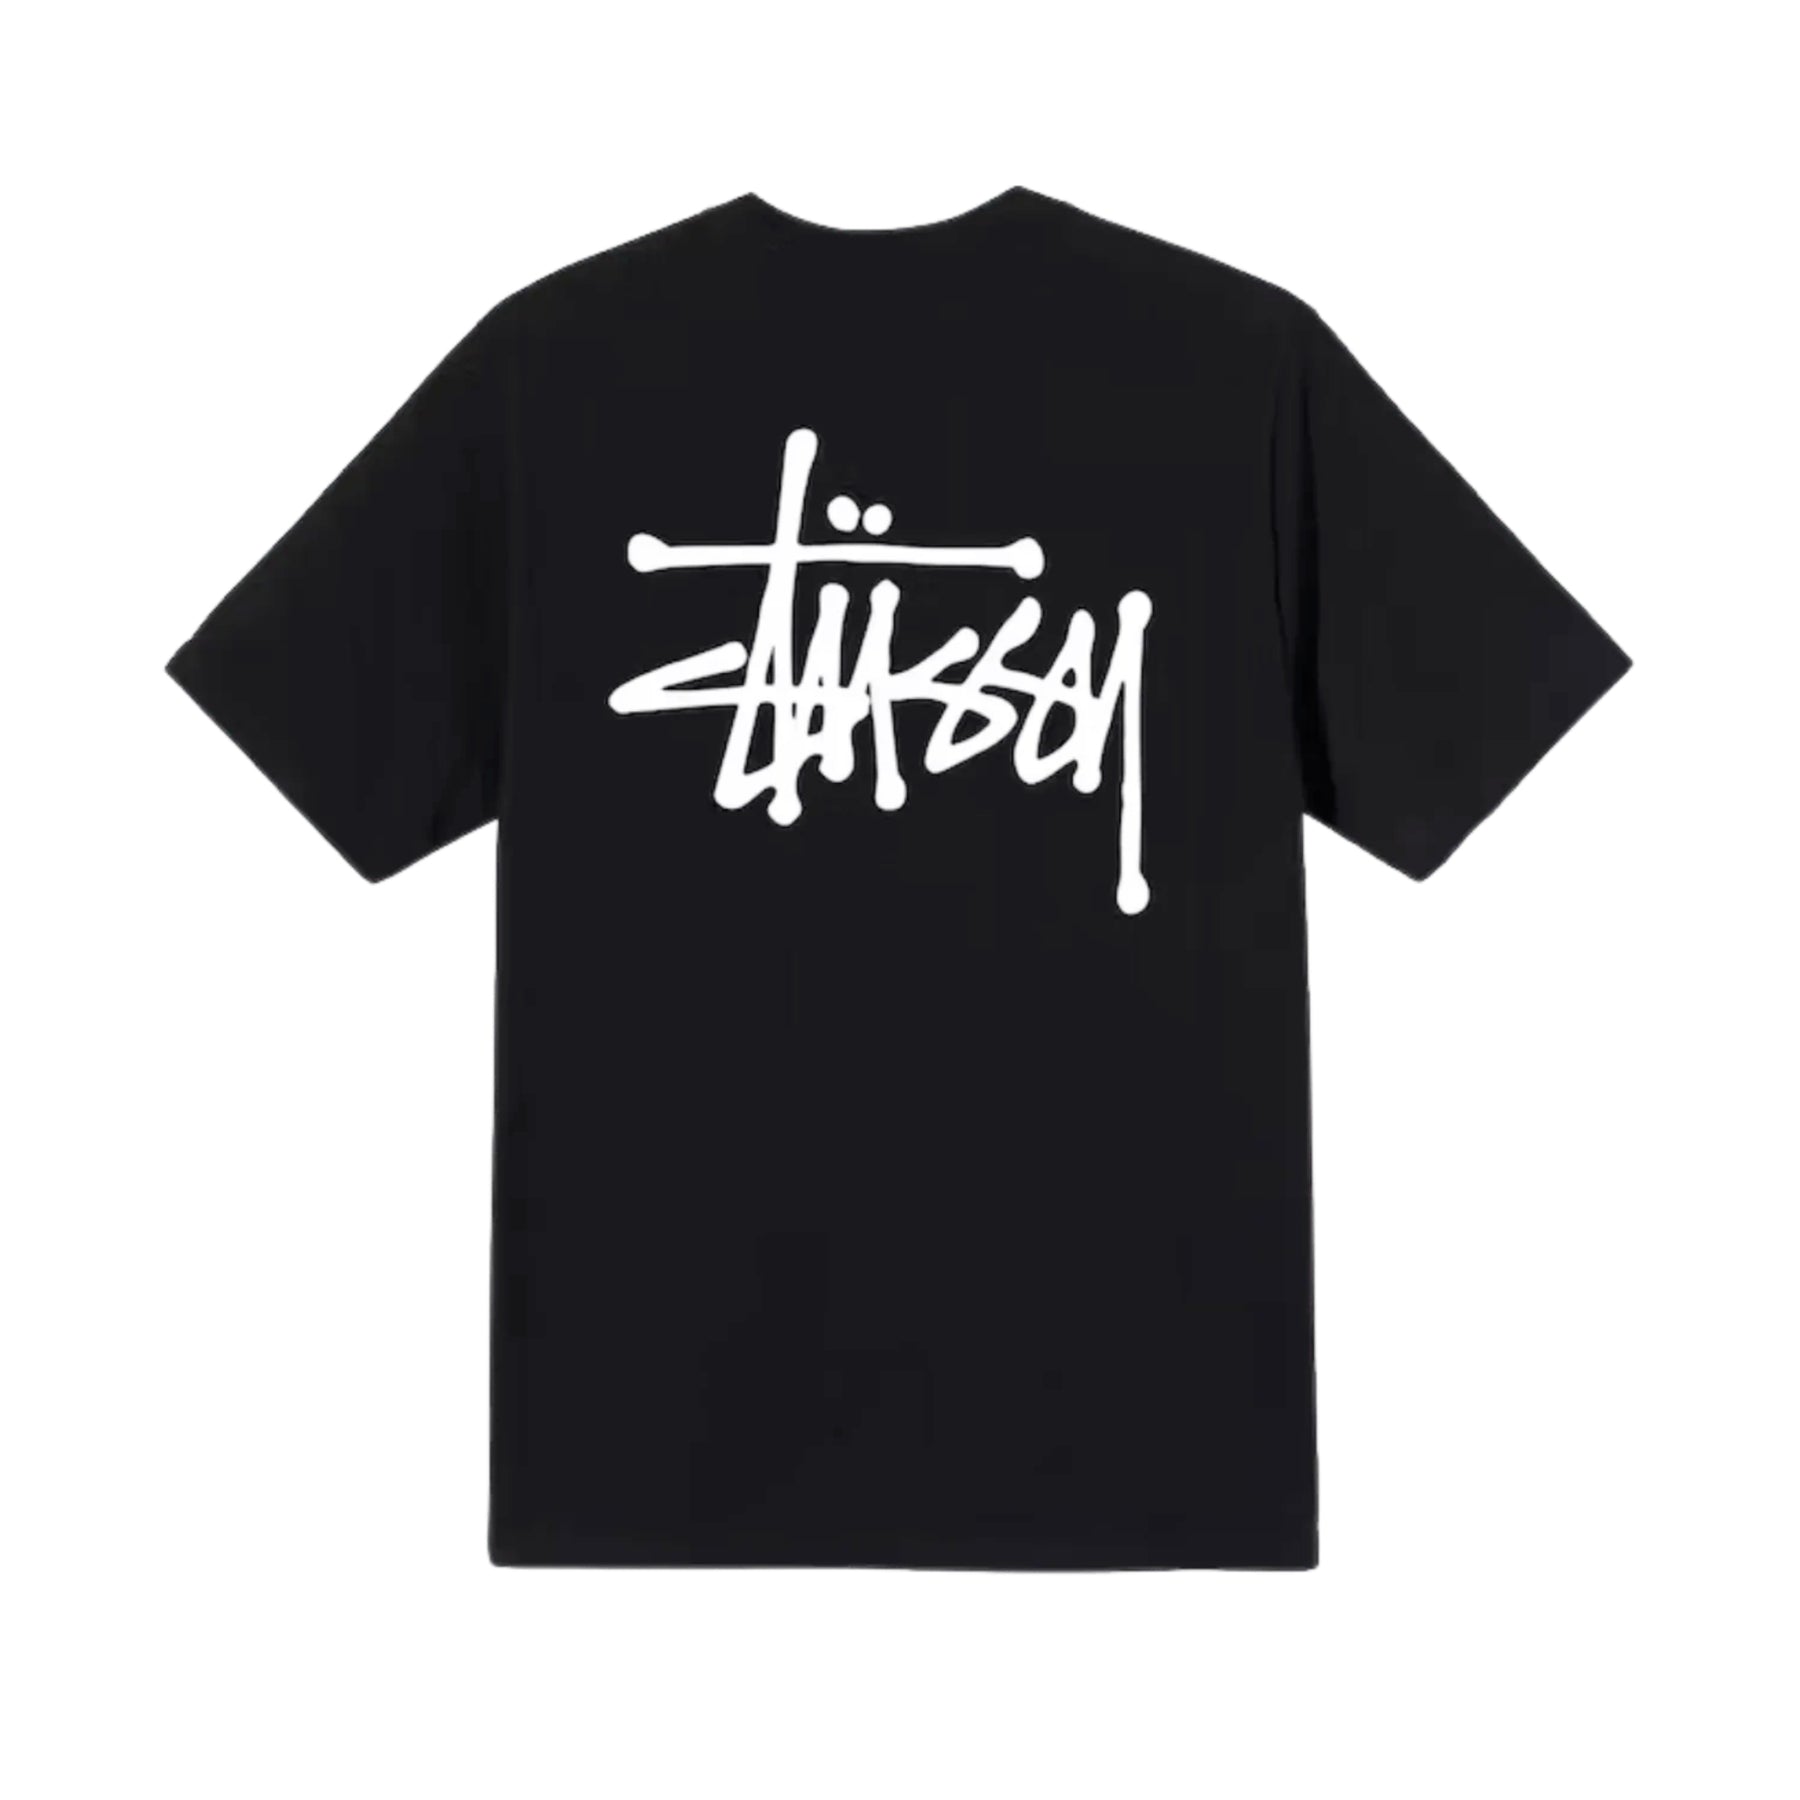 Stüssy Basic T-shirt "Black" - Streetwear - street-bill.dk